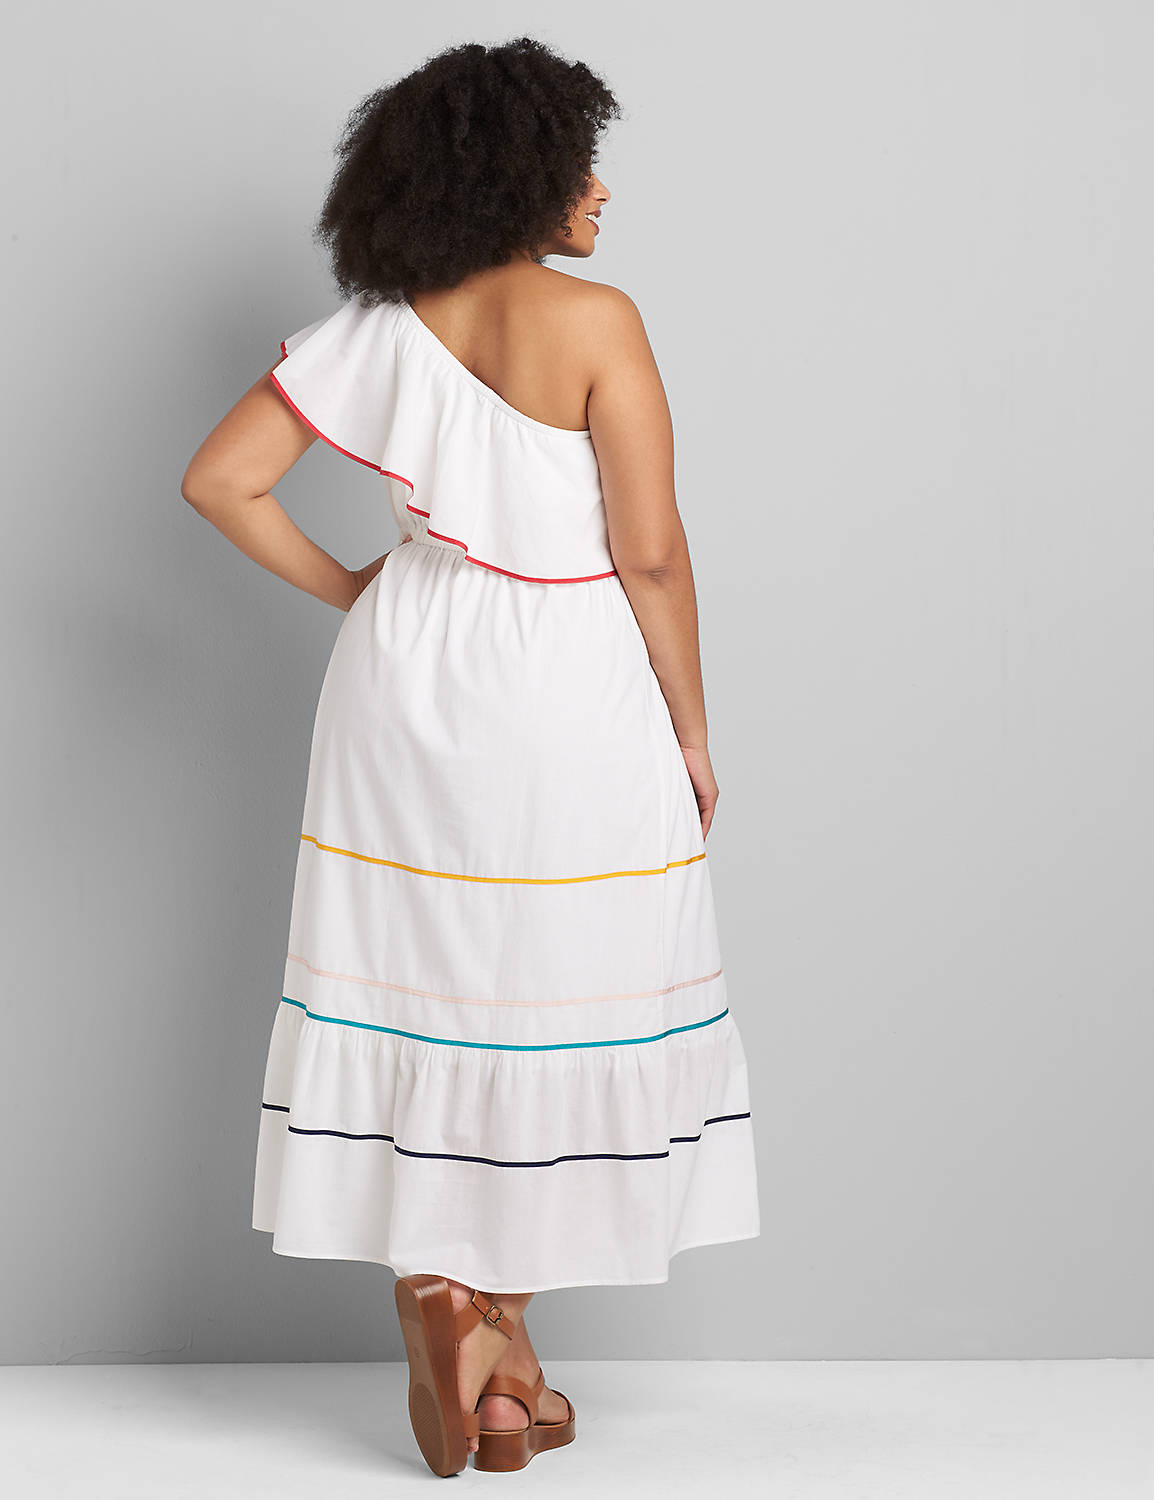 One-Shoulder Ruffle-Hem Maxi Dress Product Image 2